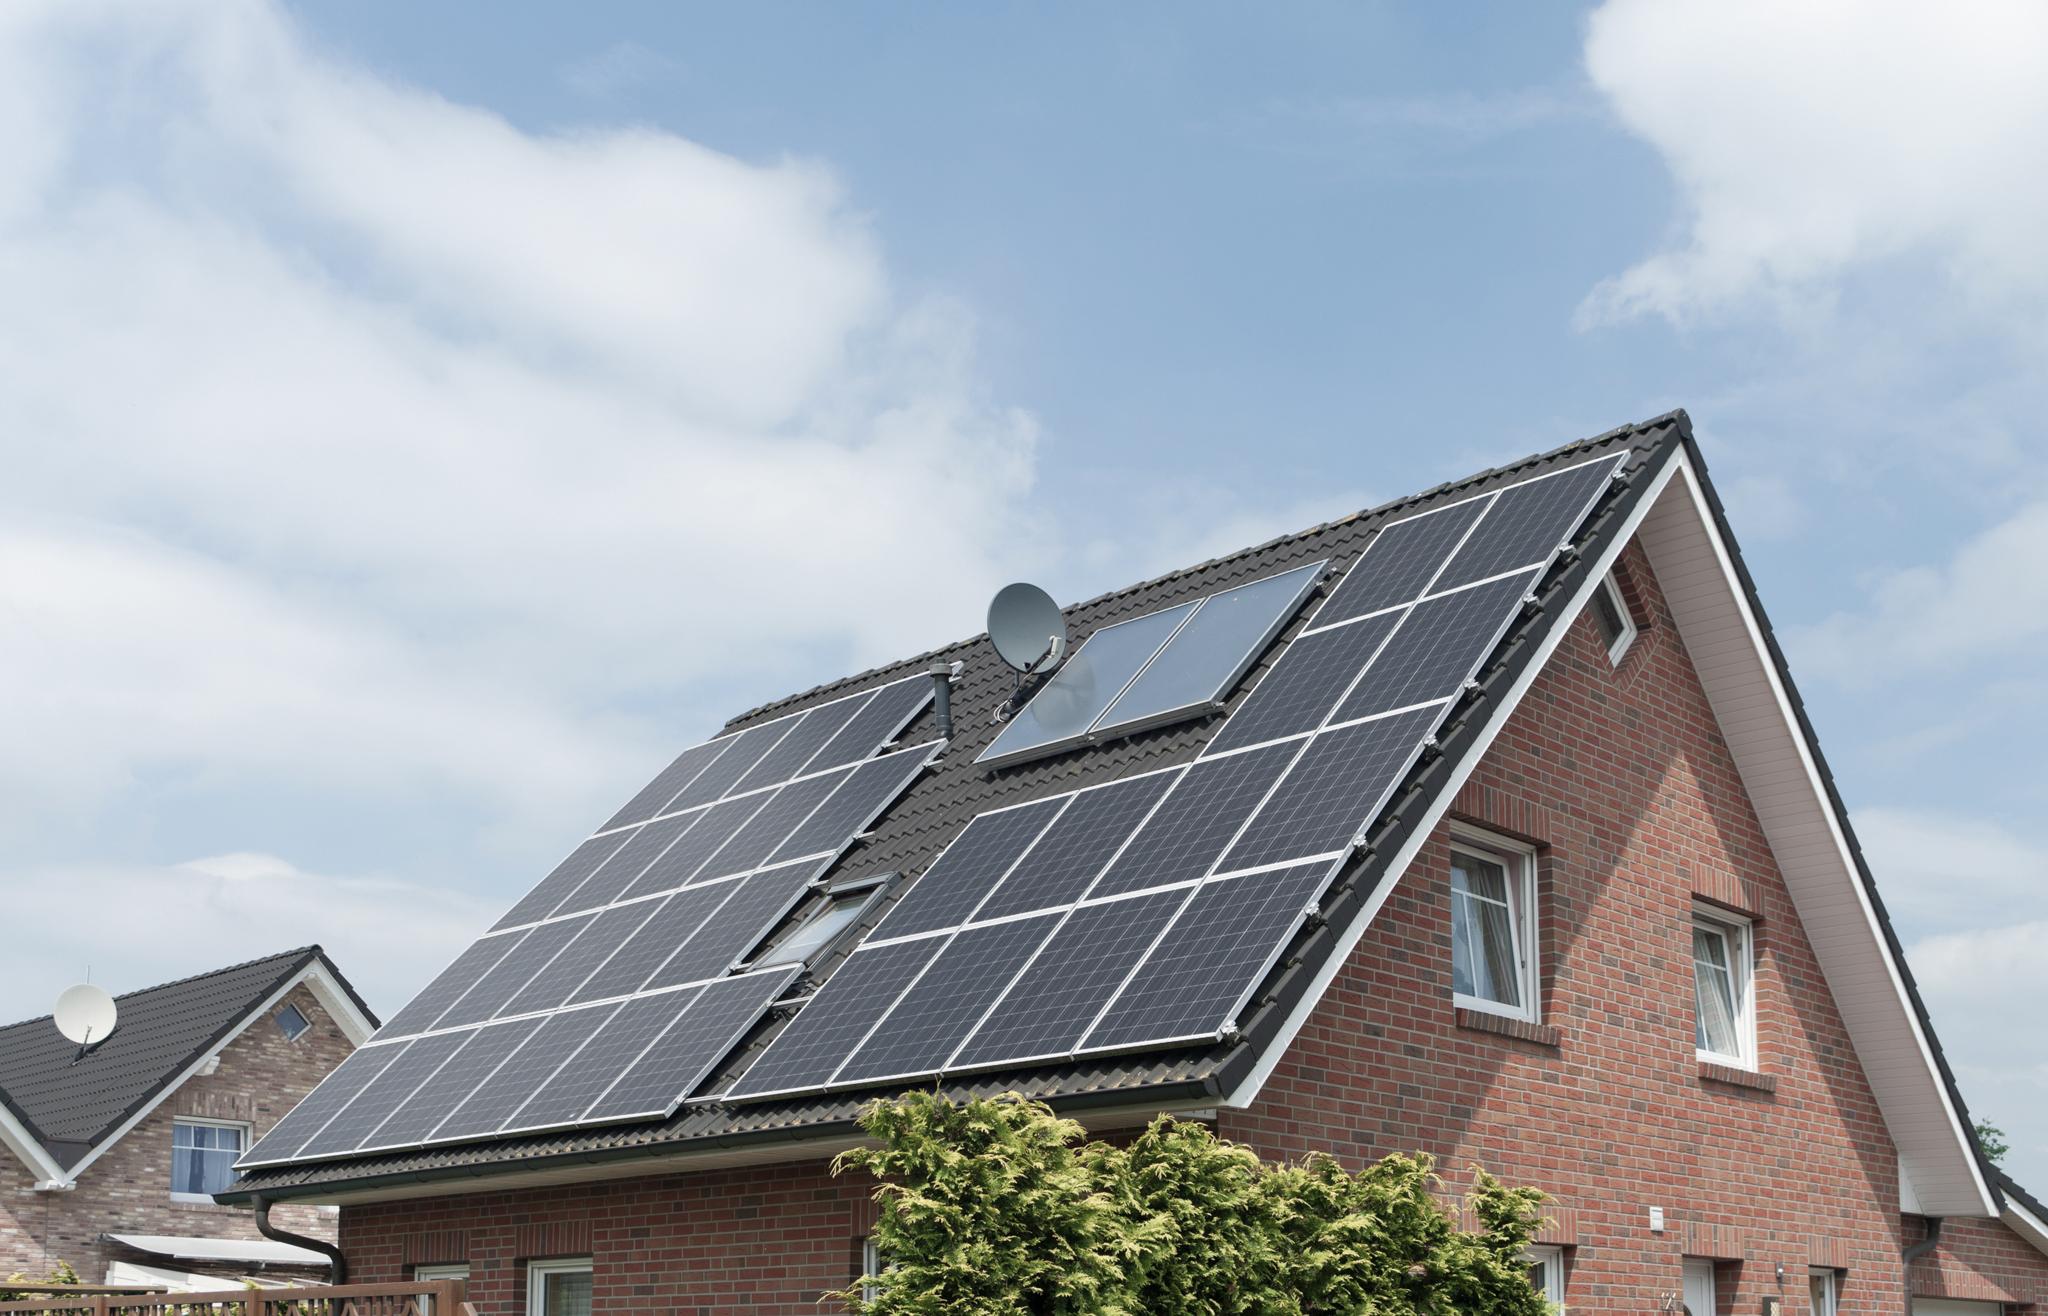 Einfamilienhaus mit Solaranlage -Installation zolar Photovoltaikanlage